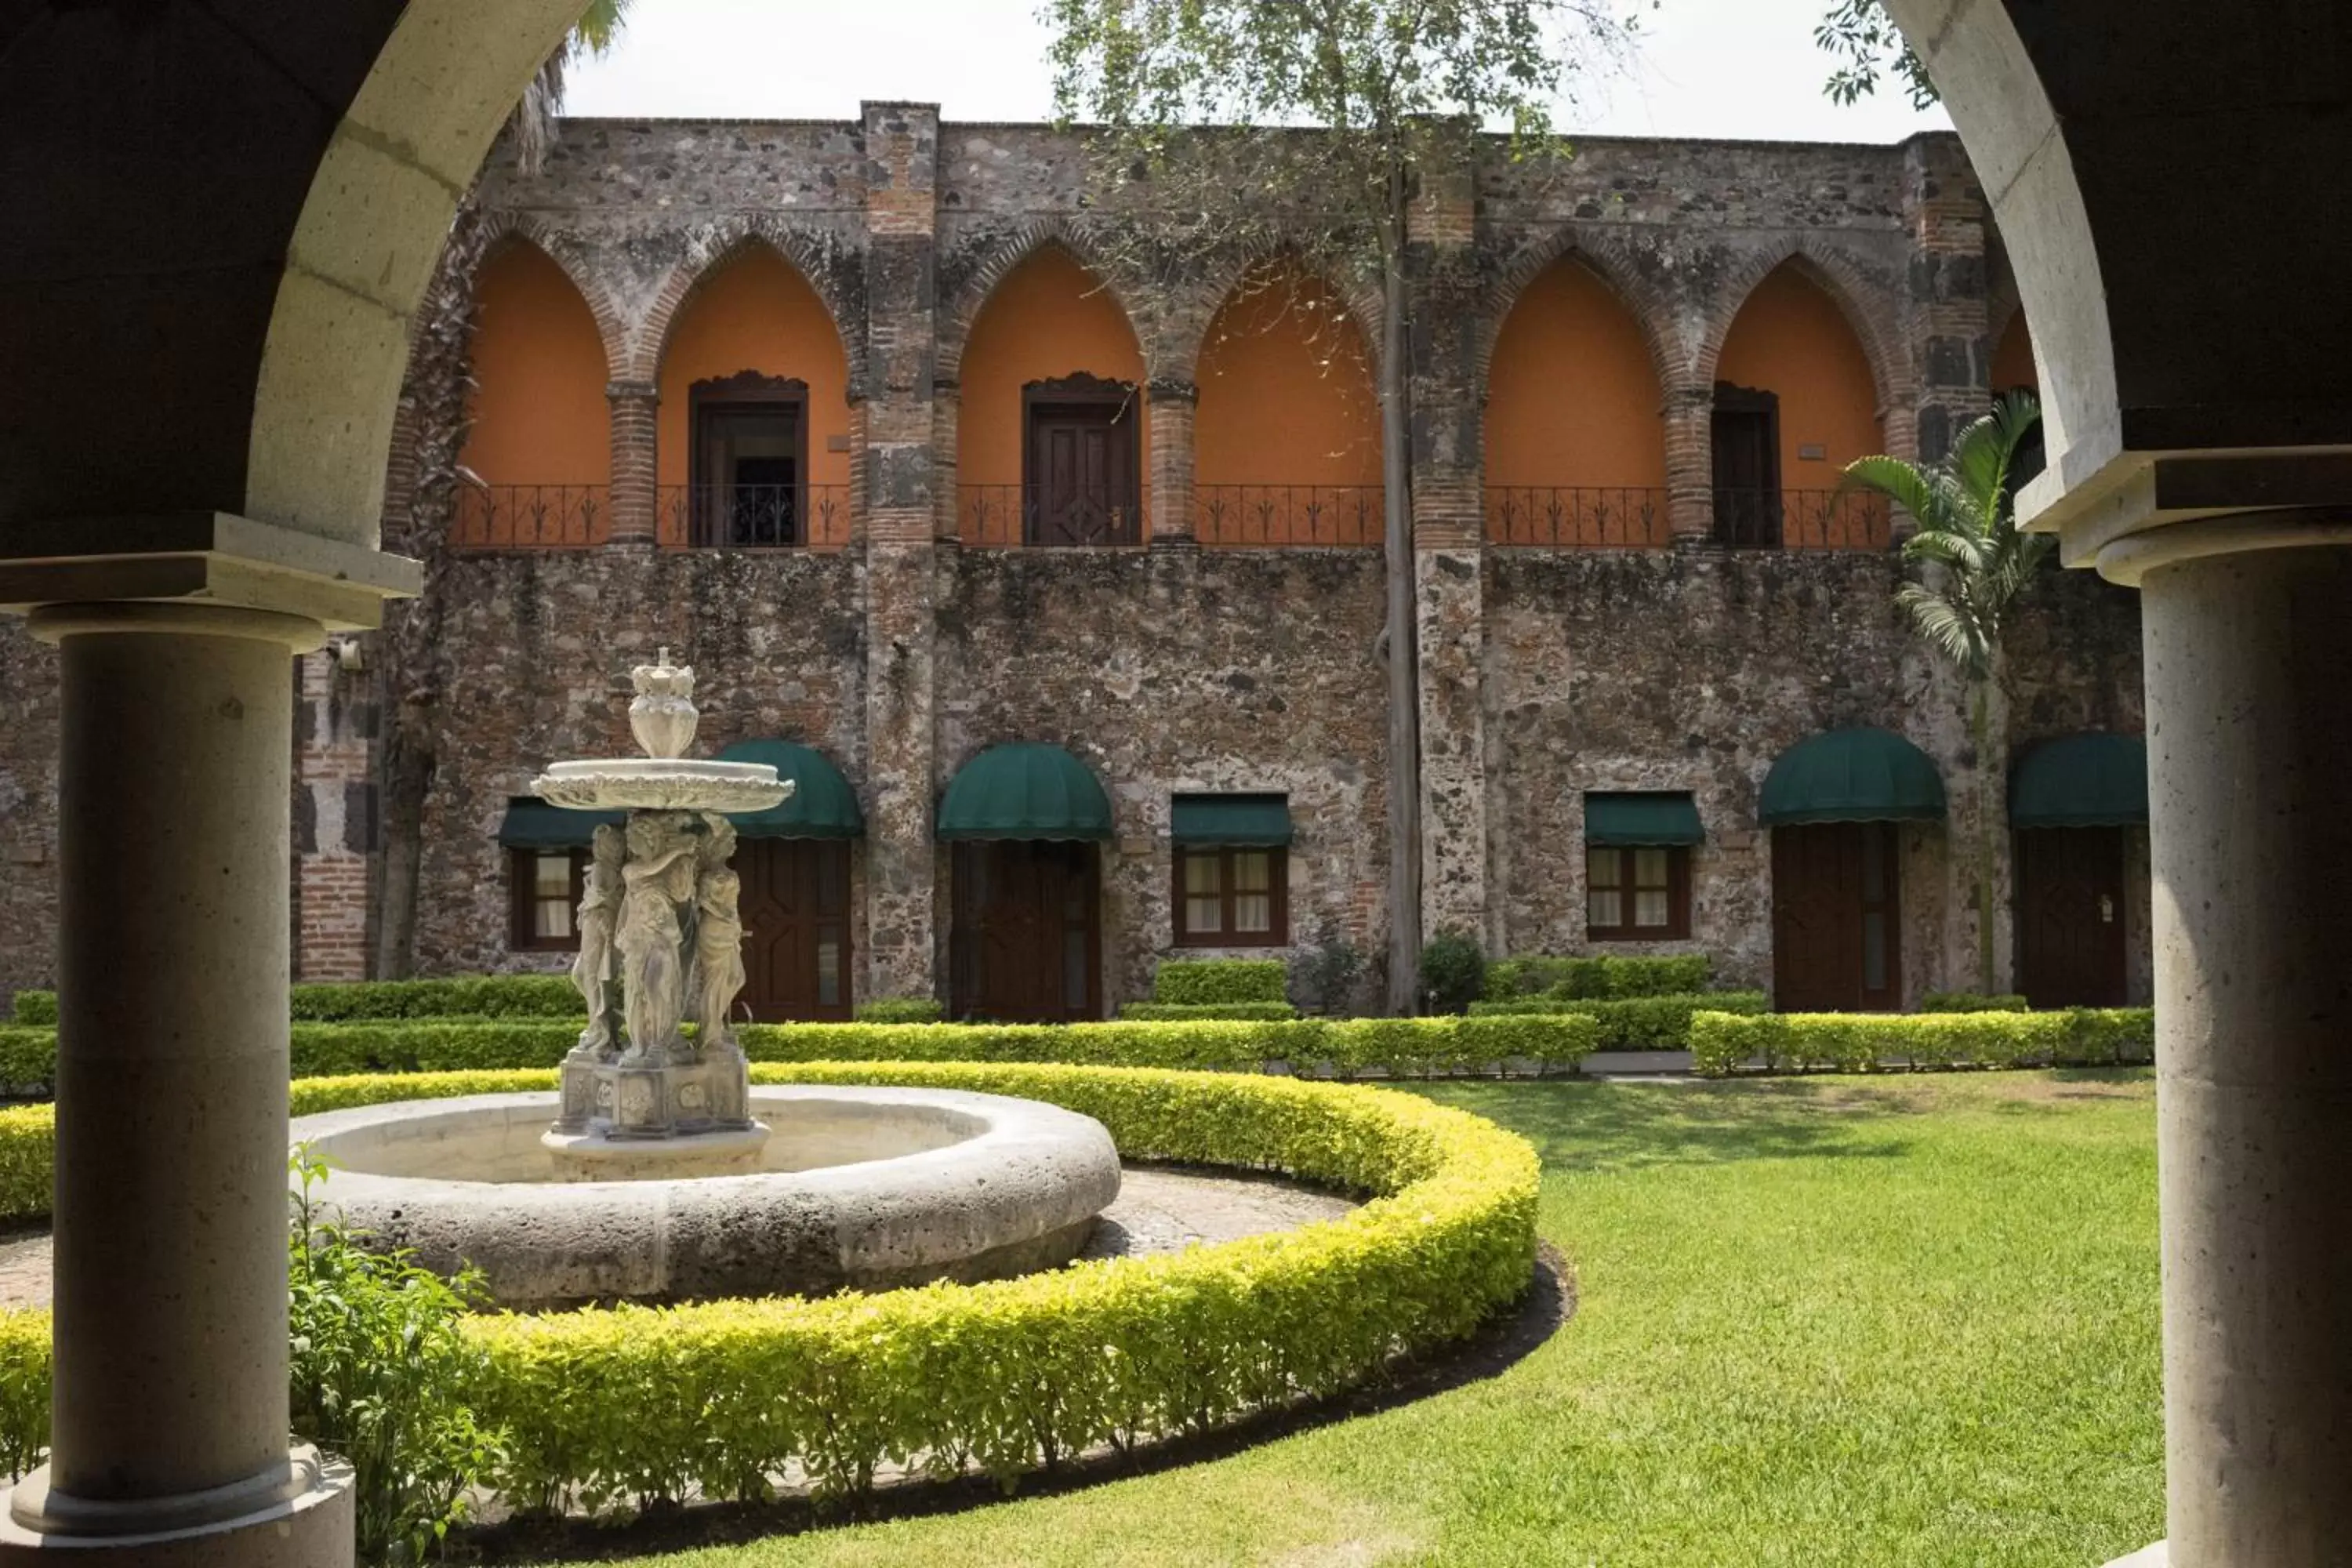 Property Building in Fiesta Americana Hacienda San Antonio El Puente Cuernavaca